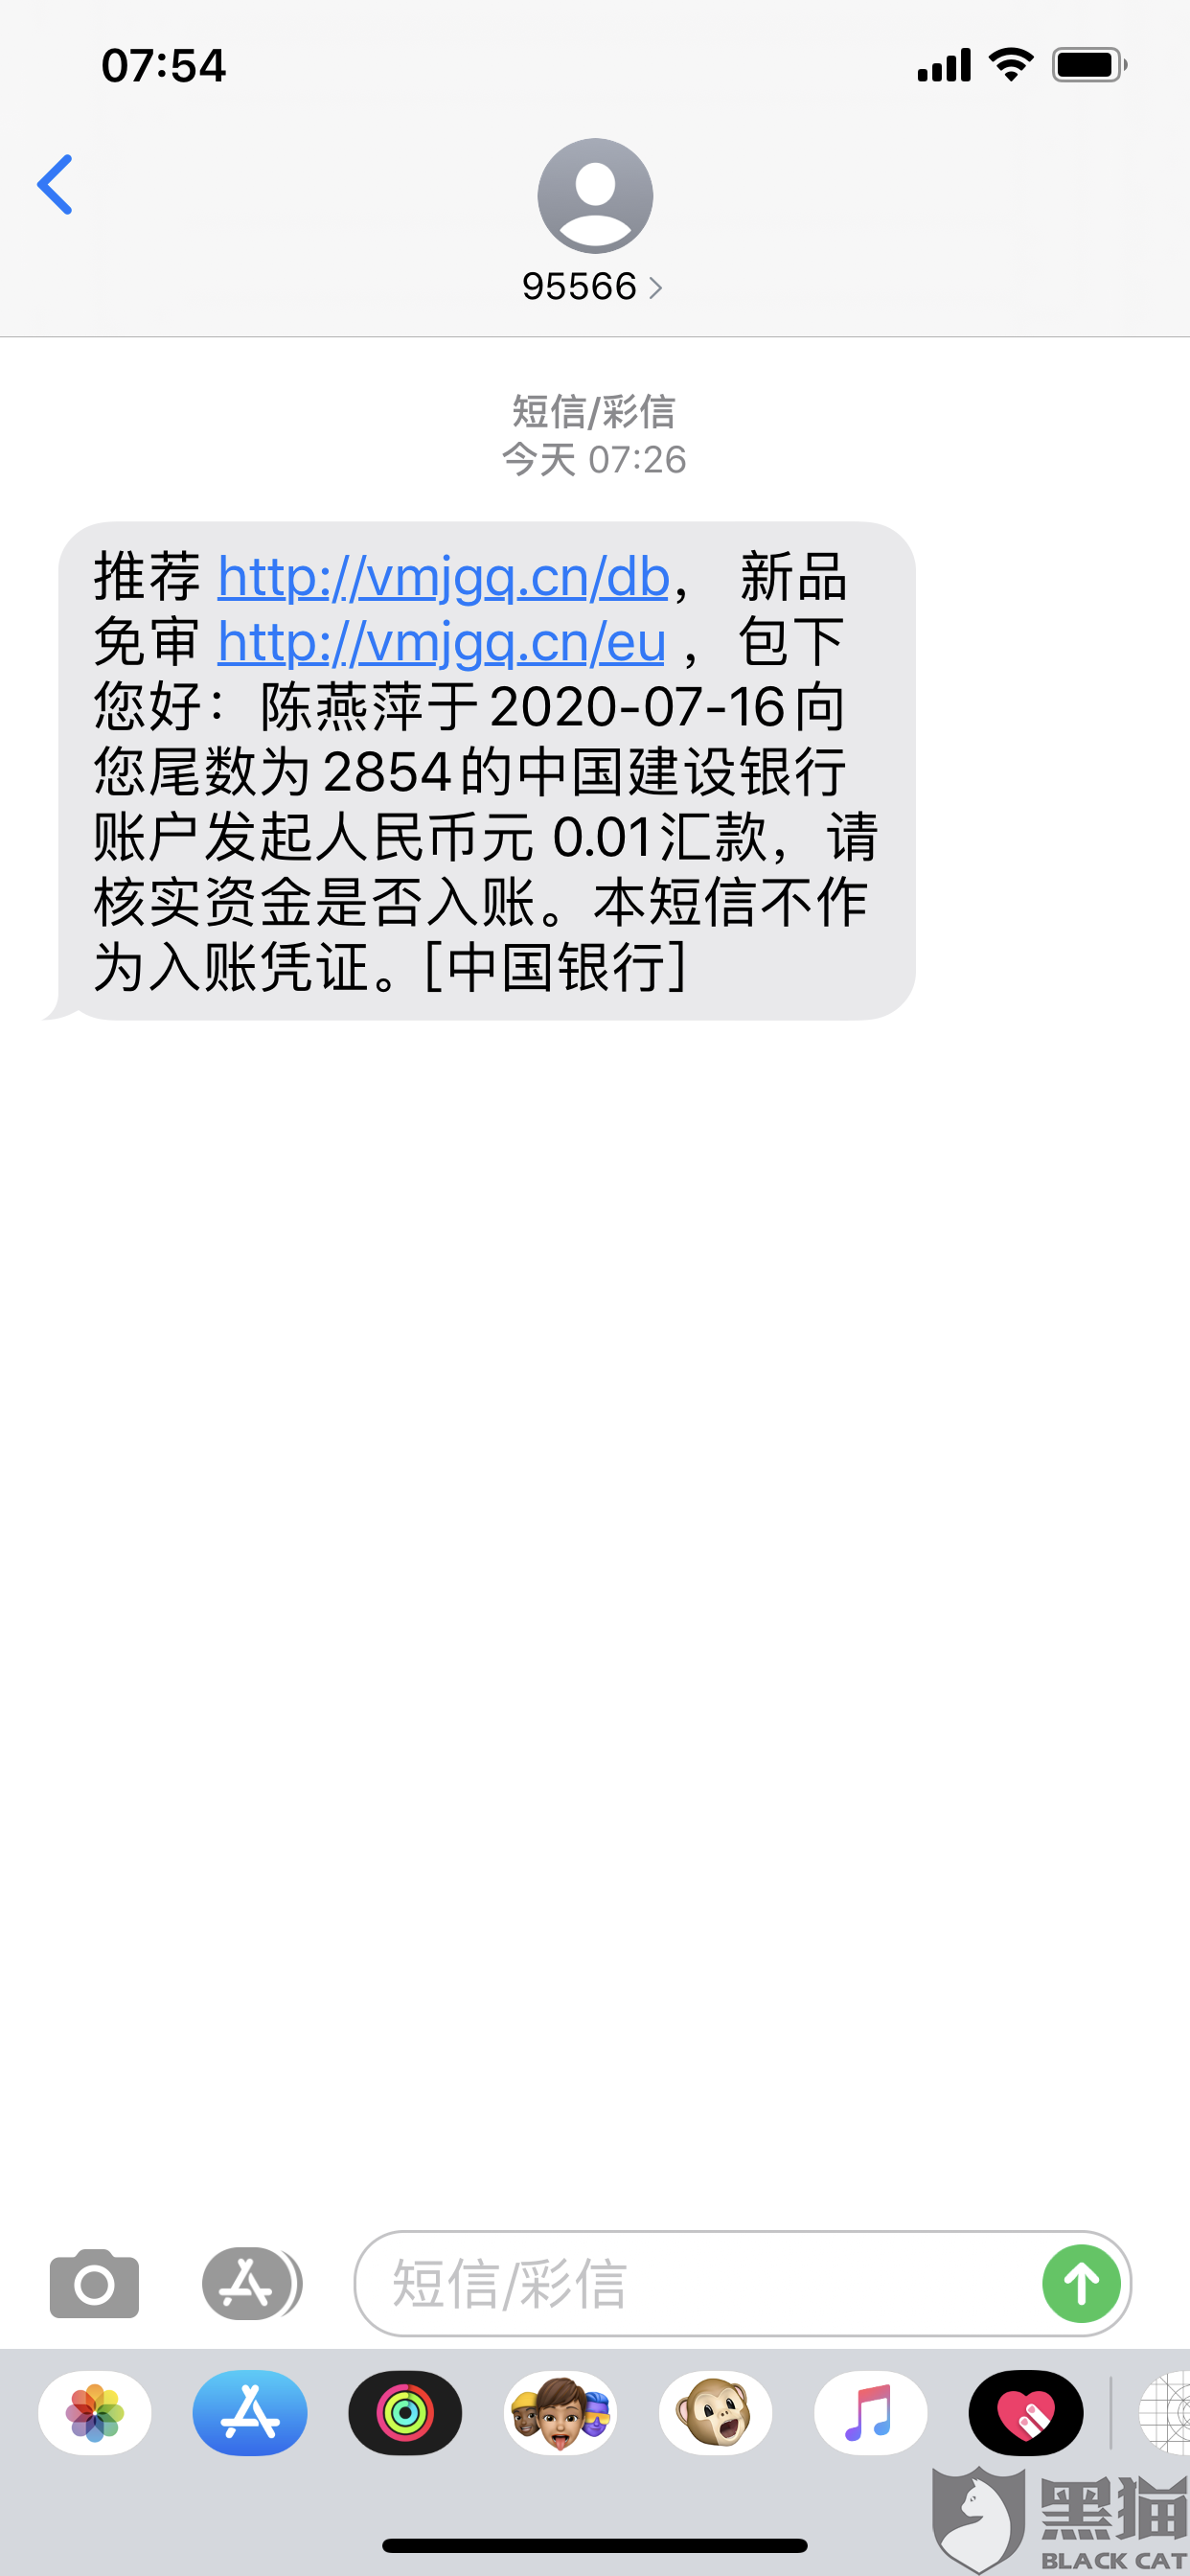 黑猫投诉:中国银行95566,发送网贷短信